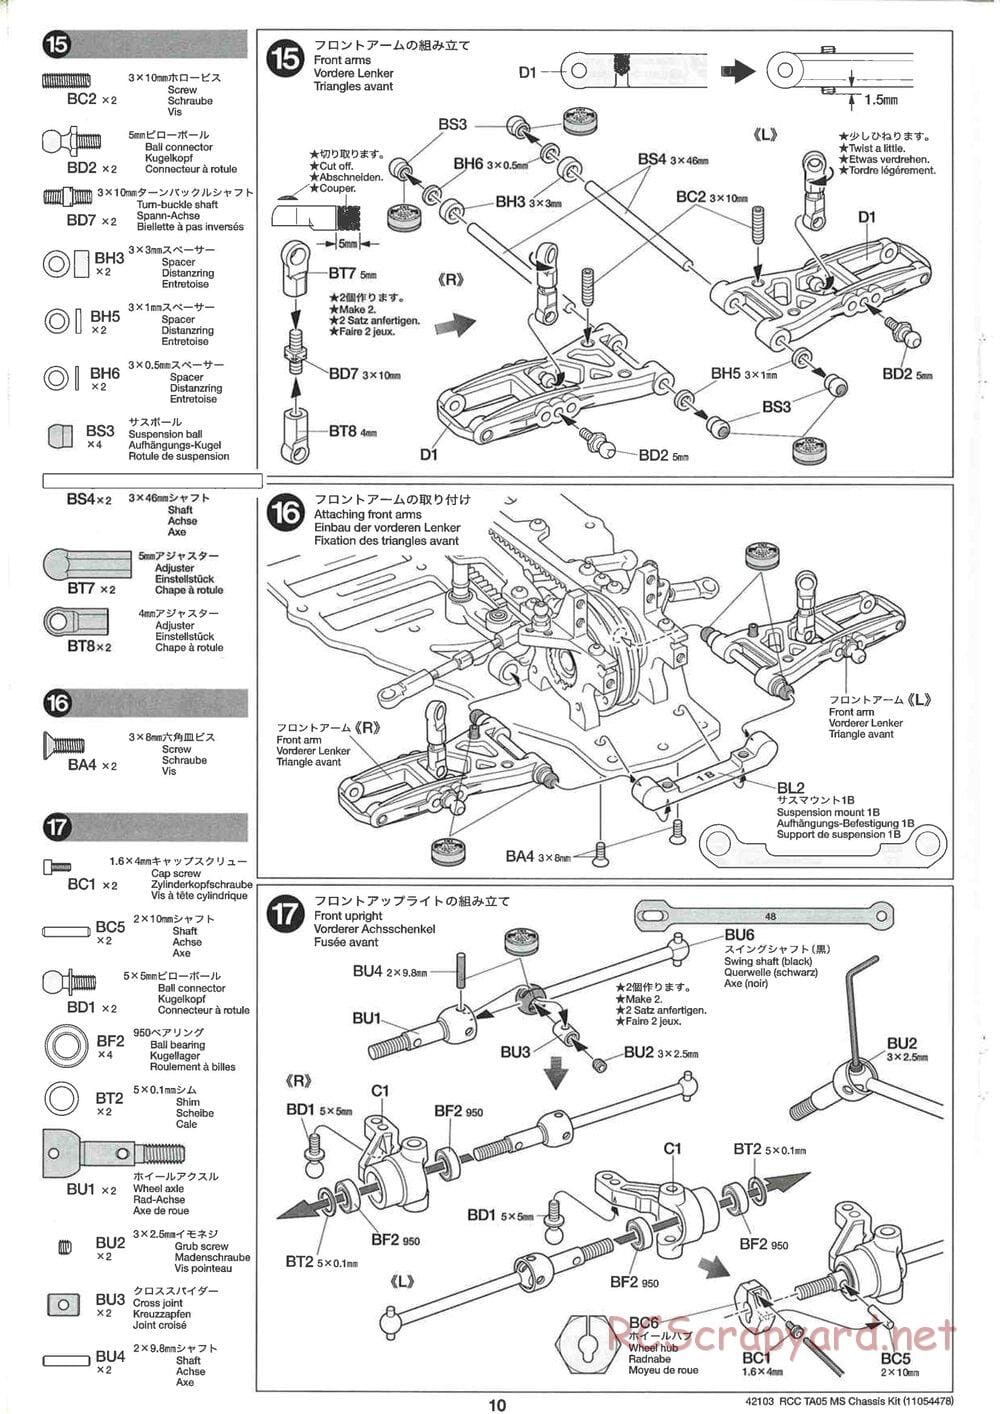 Tamiya - TA05 MS Chassis - Manual - Page 10